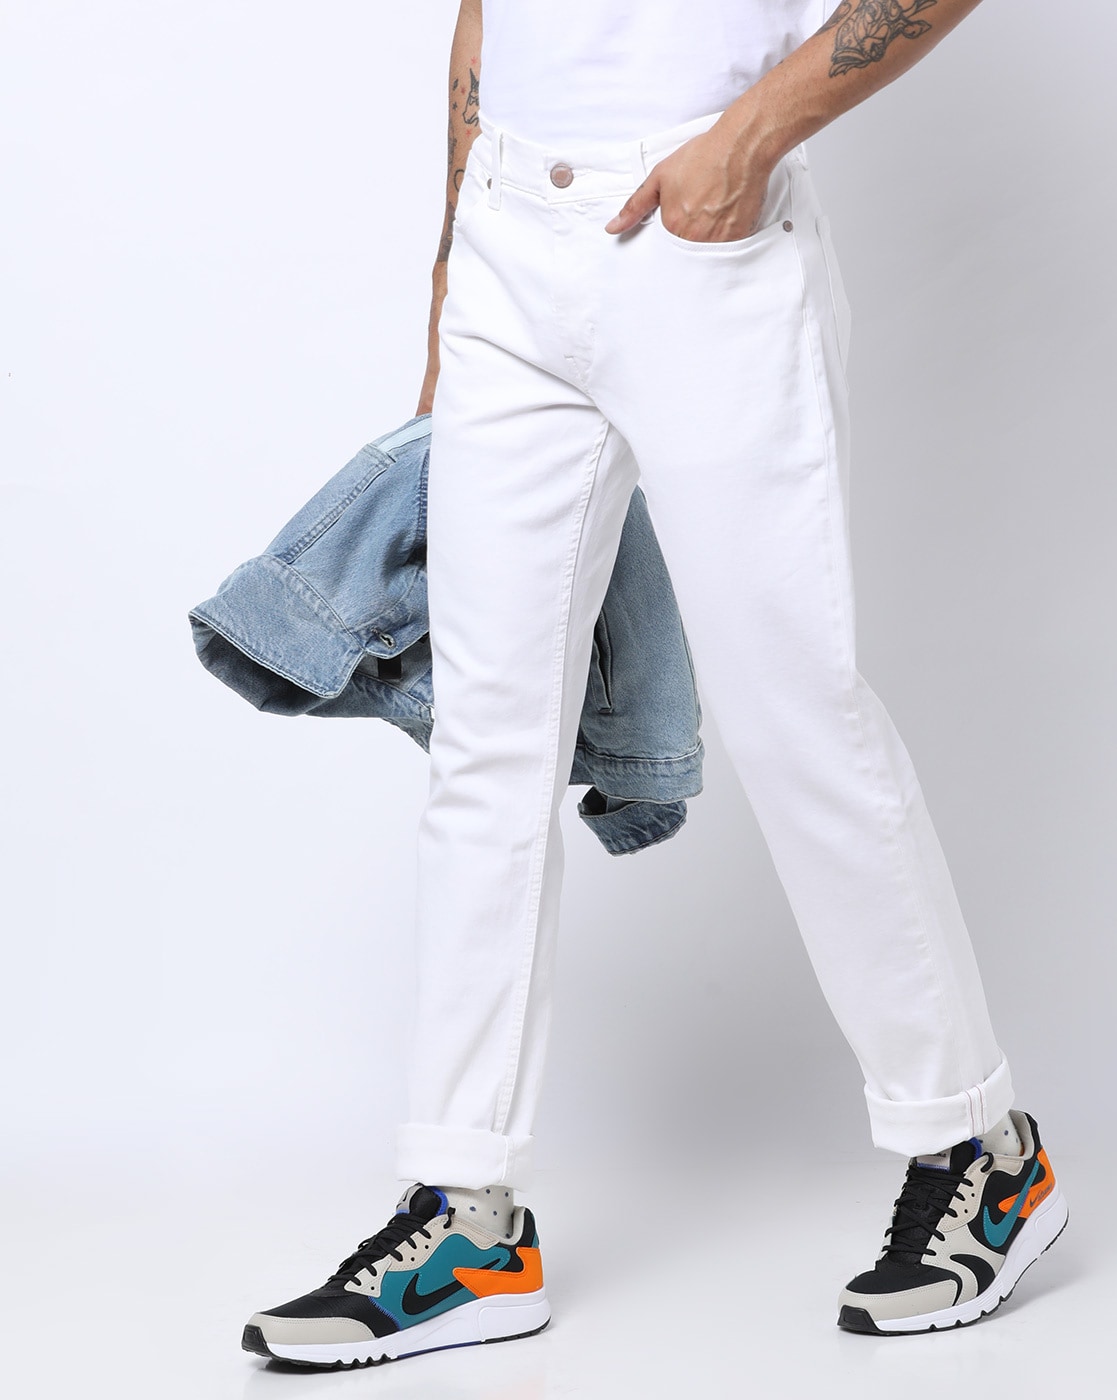 levis white jeans mens